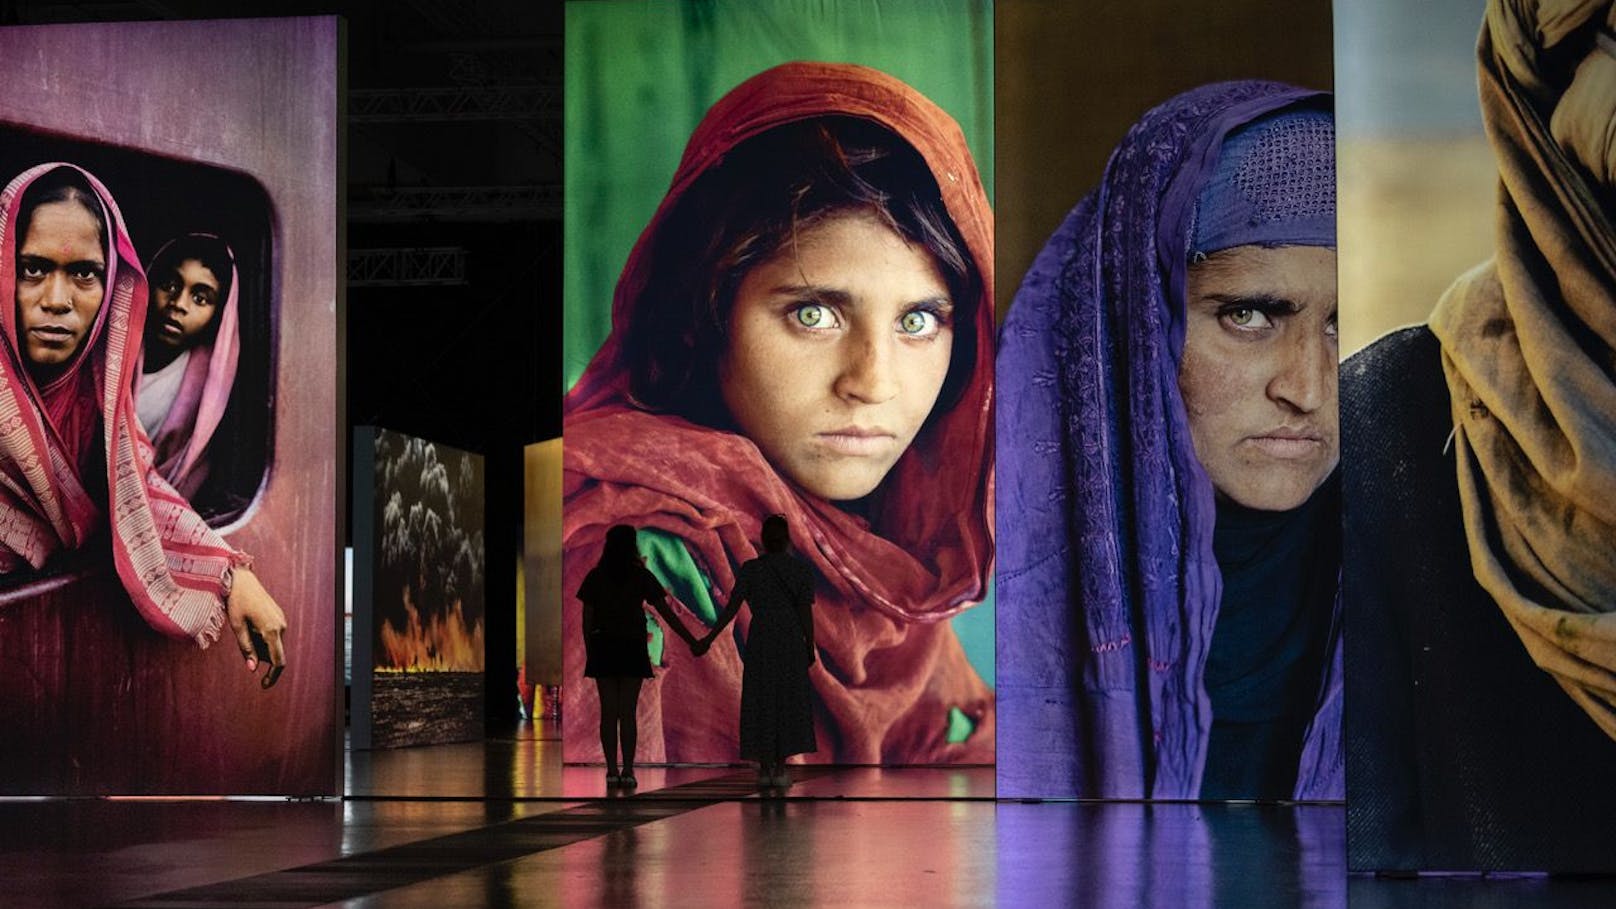 Steve McCurry Ausstellung: Riesige Bilder werden von hinten beleuchtet. Das ist sehr eindrucksvoll. Das afghanische Mädchen mit rotem Schleier ist weltberühmt.&nbsp;